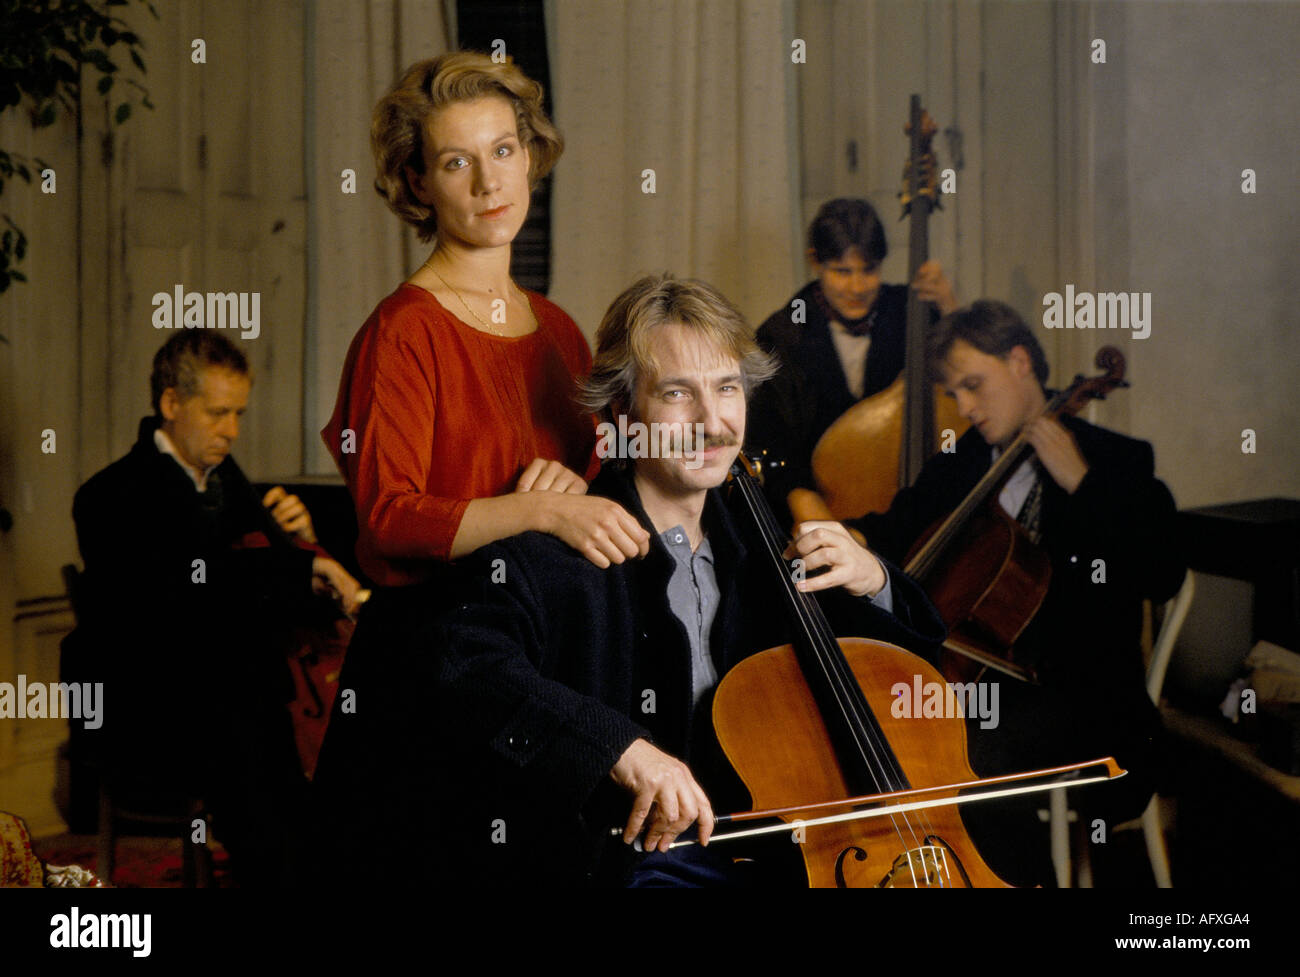 Alan Rickman attore britannico che suona violoncello Juliet Stevenson attrice britannica sul set del film di veramente Madly profondamente. Londra, Inghilterra Marzo 1990 1990s OMERO Foto Stock